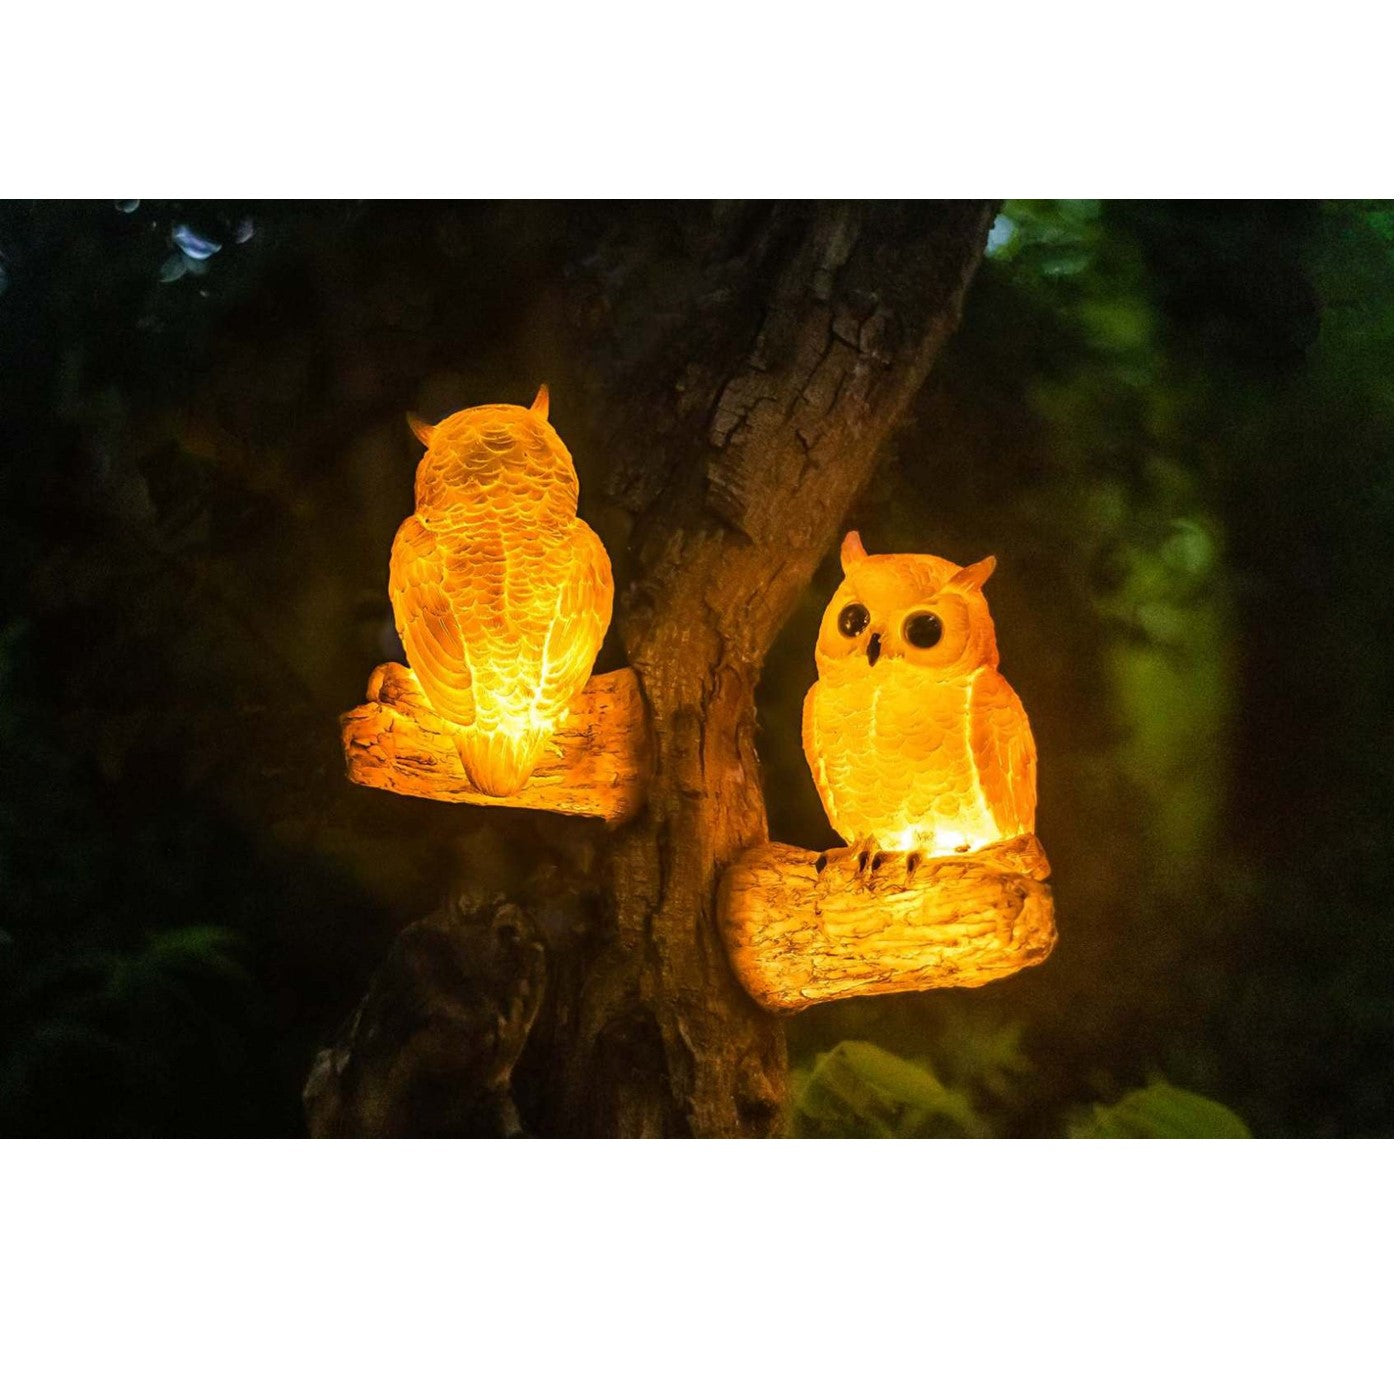 009-Owl Kids Wall Light